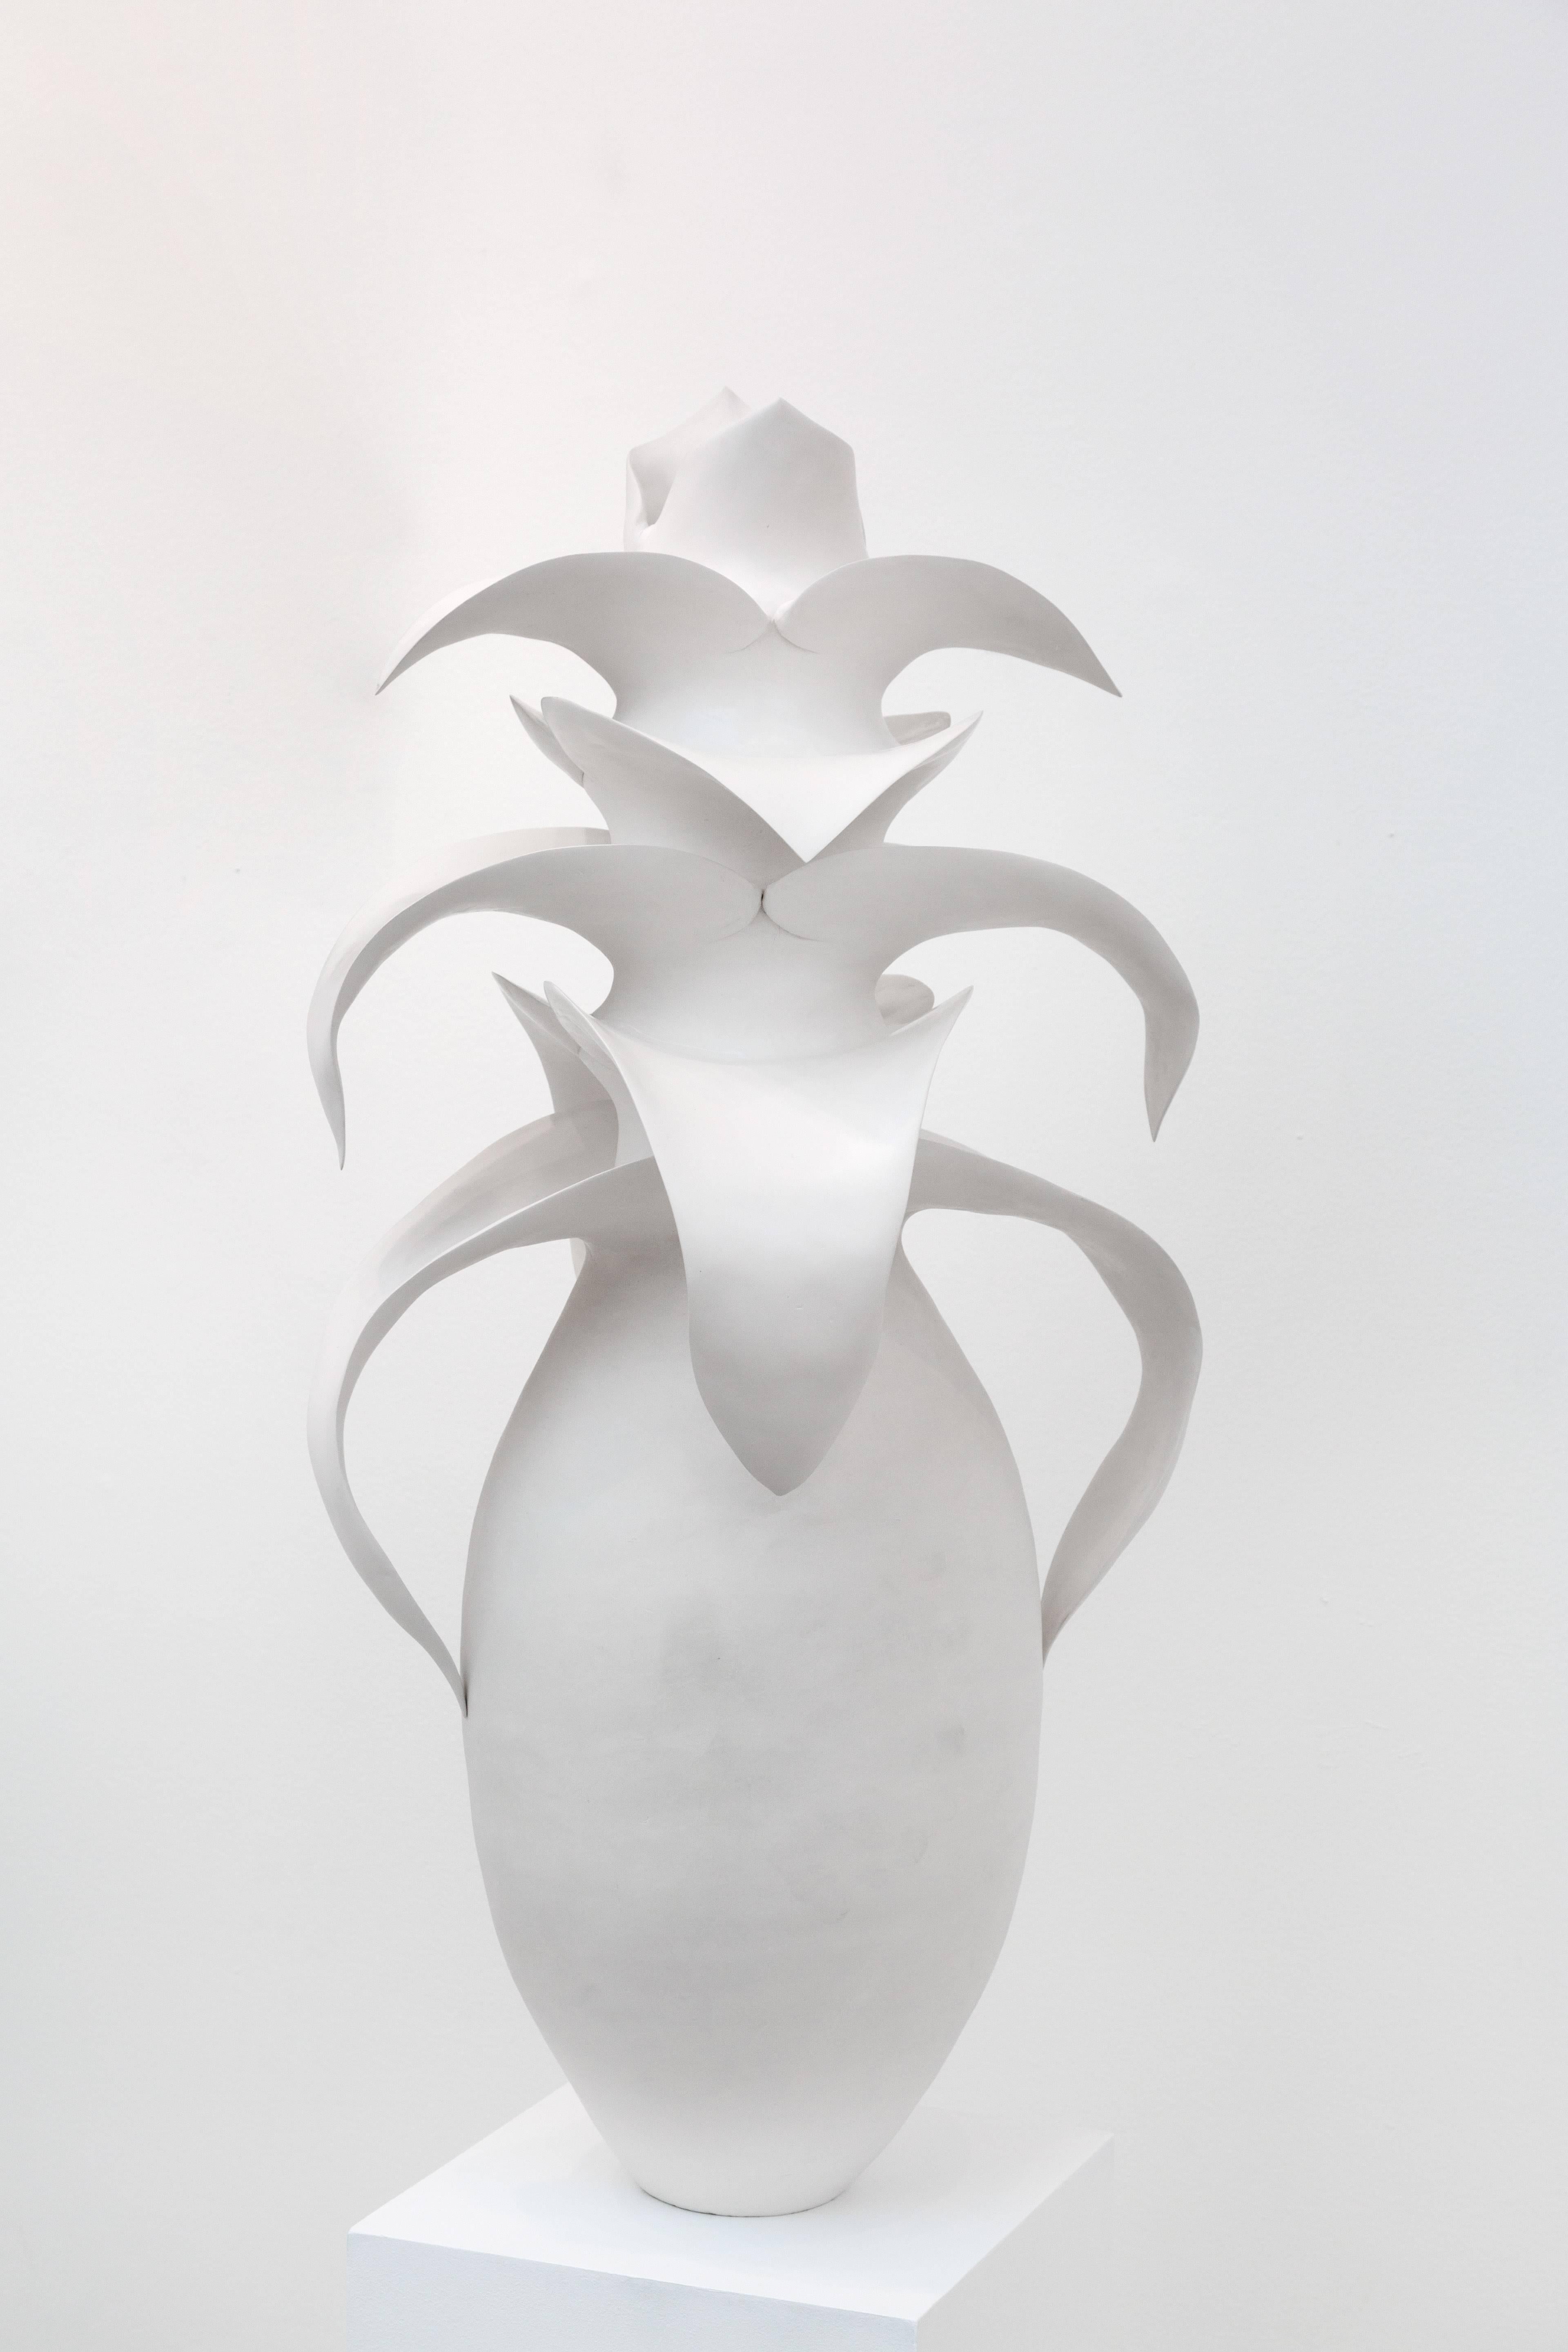 Astrid Dahl Abstract Sculpture - Succulent